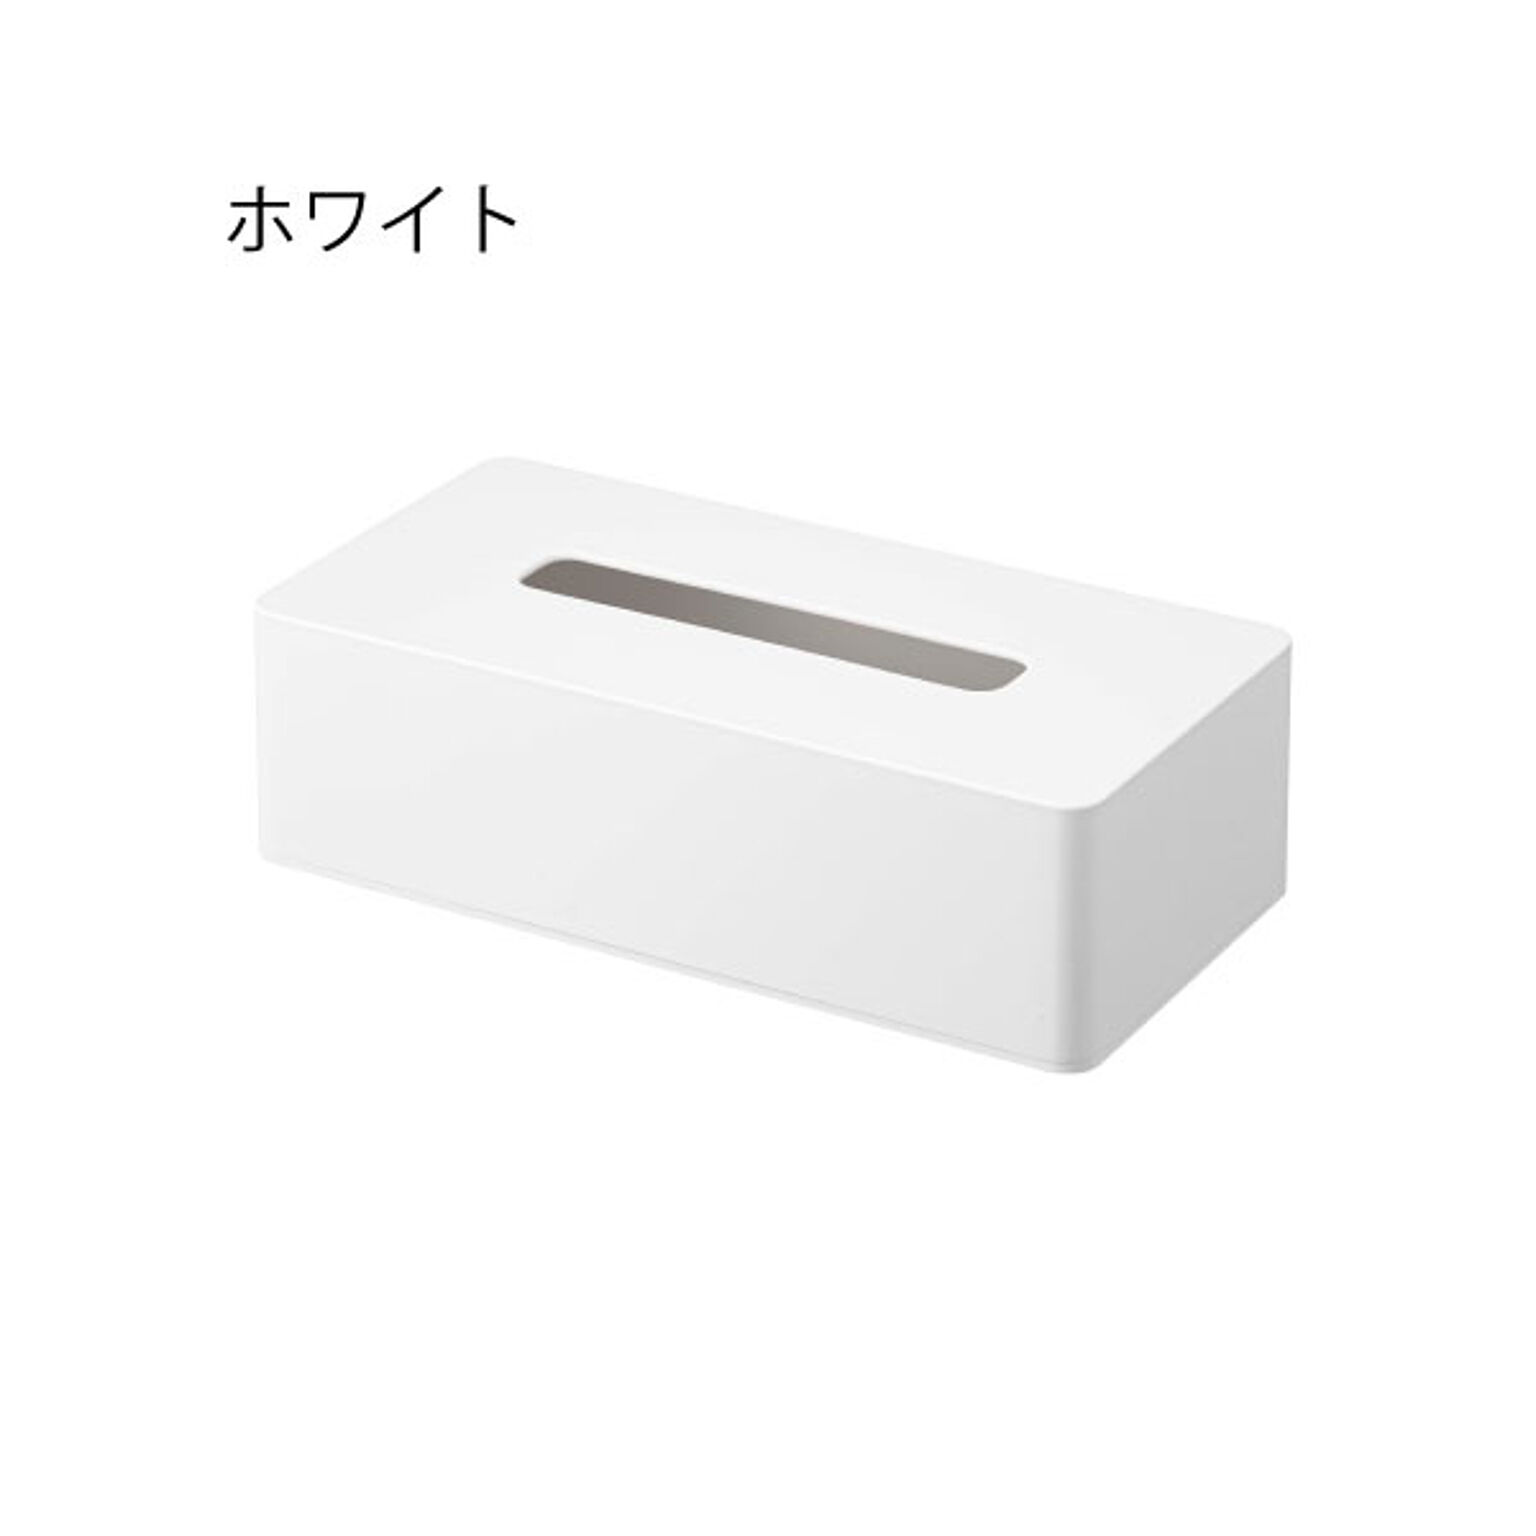 山崎実業 ティッシュケース レギュラーサイズ ホワイト